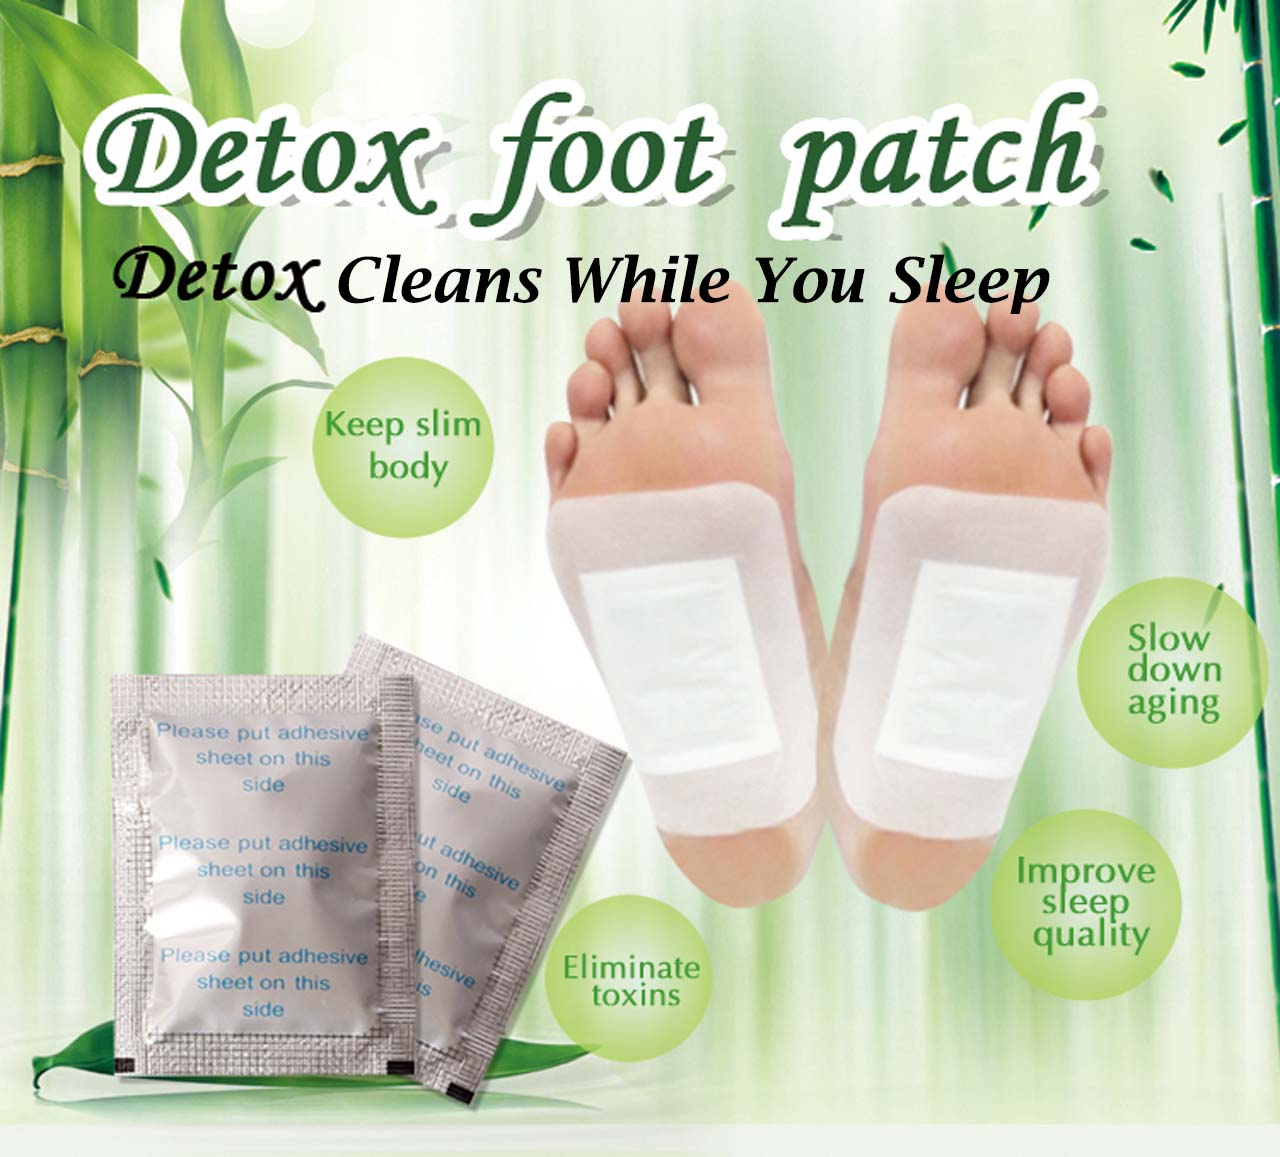 Detox Foot Pads